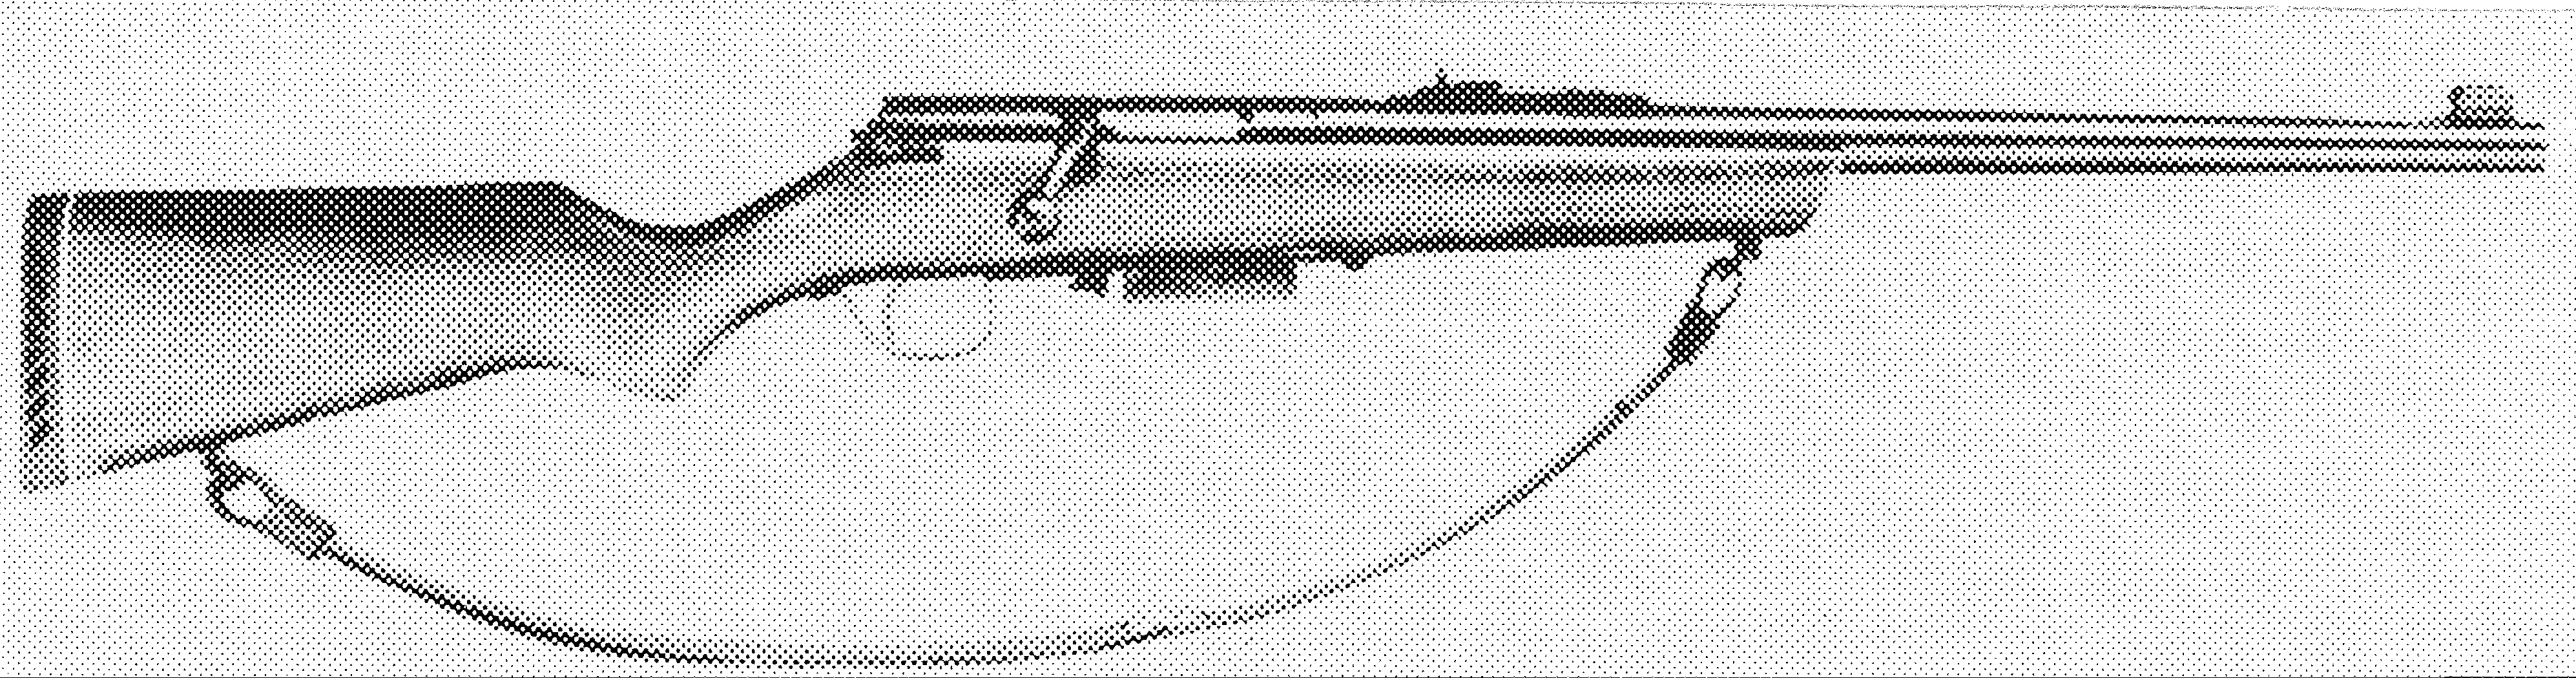 Model 55S Slug Gun